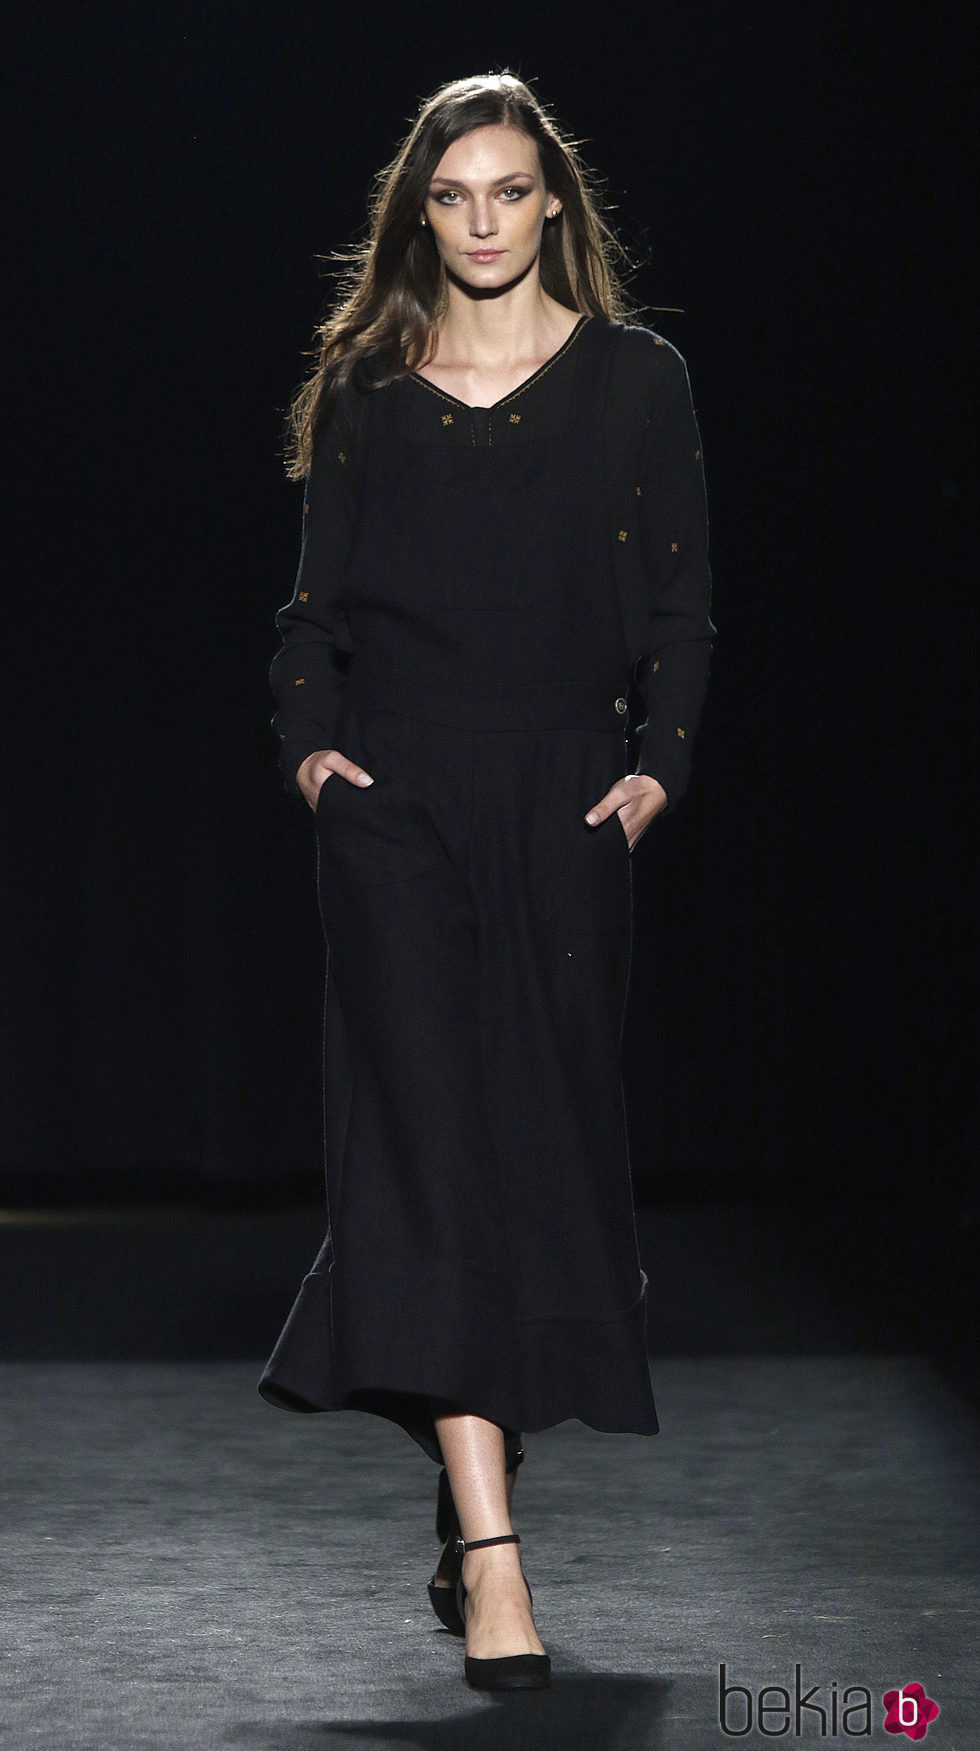 Vestido largo negro de la colección otoño/invierno 2016/2017 de Sita Murt en 080 Barcelona Fashion